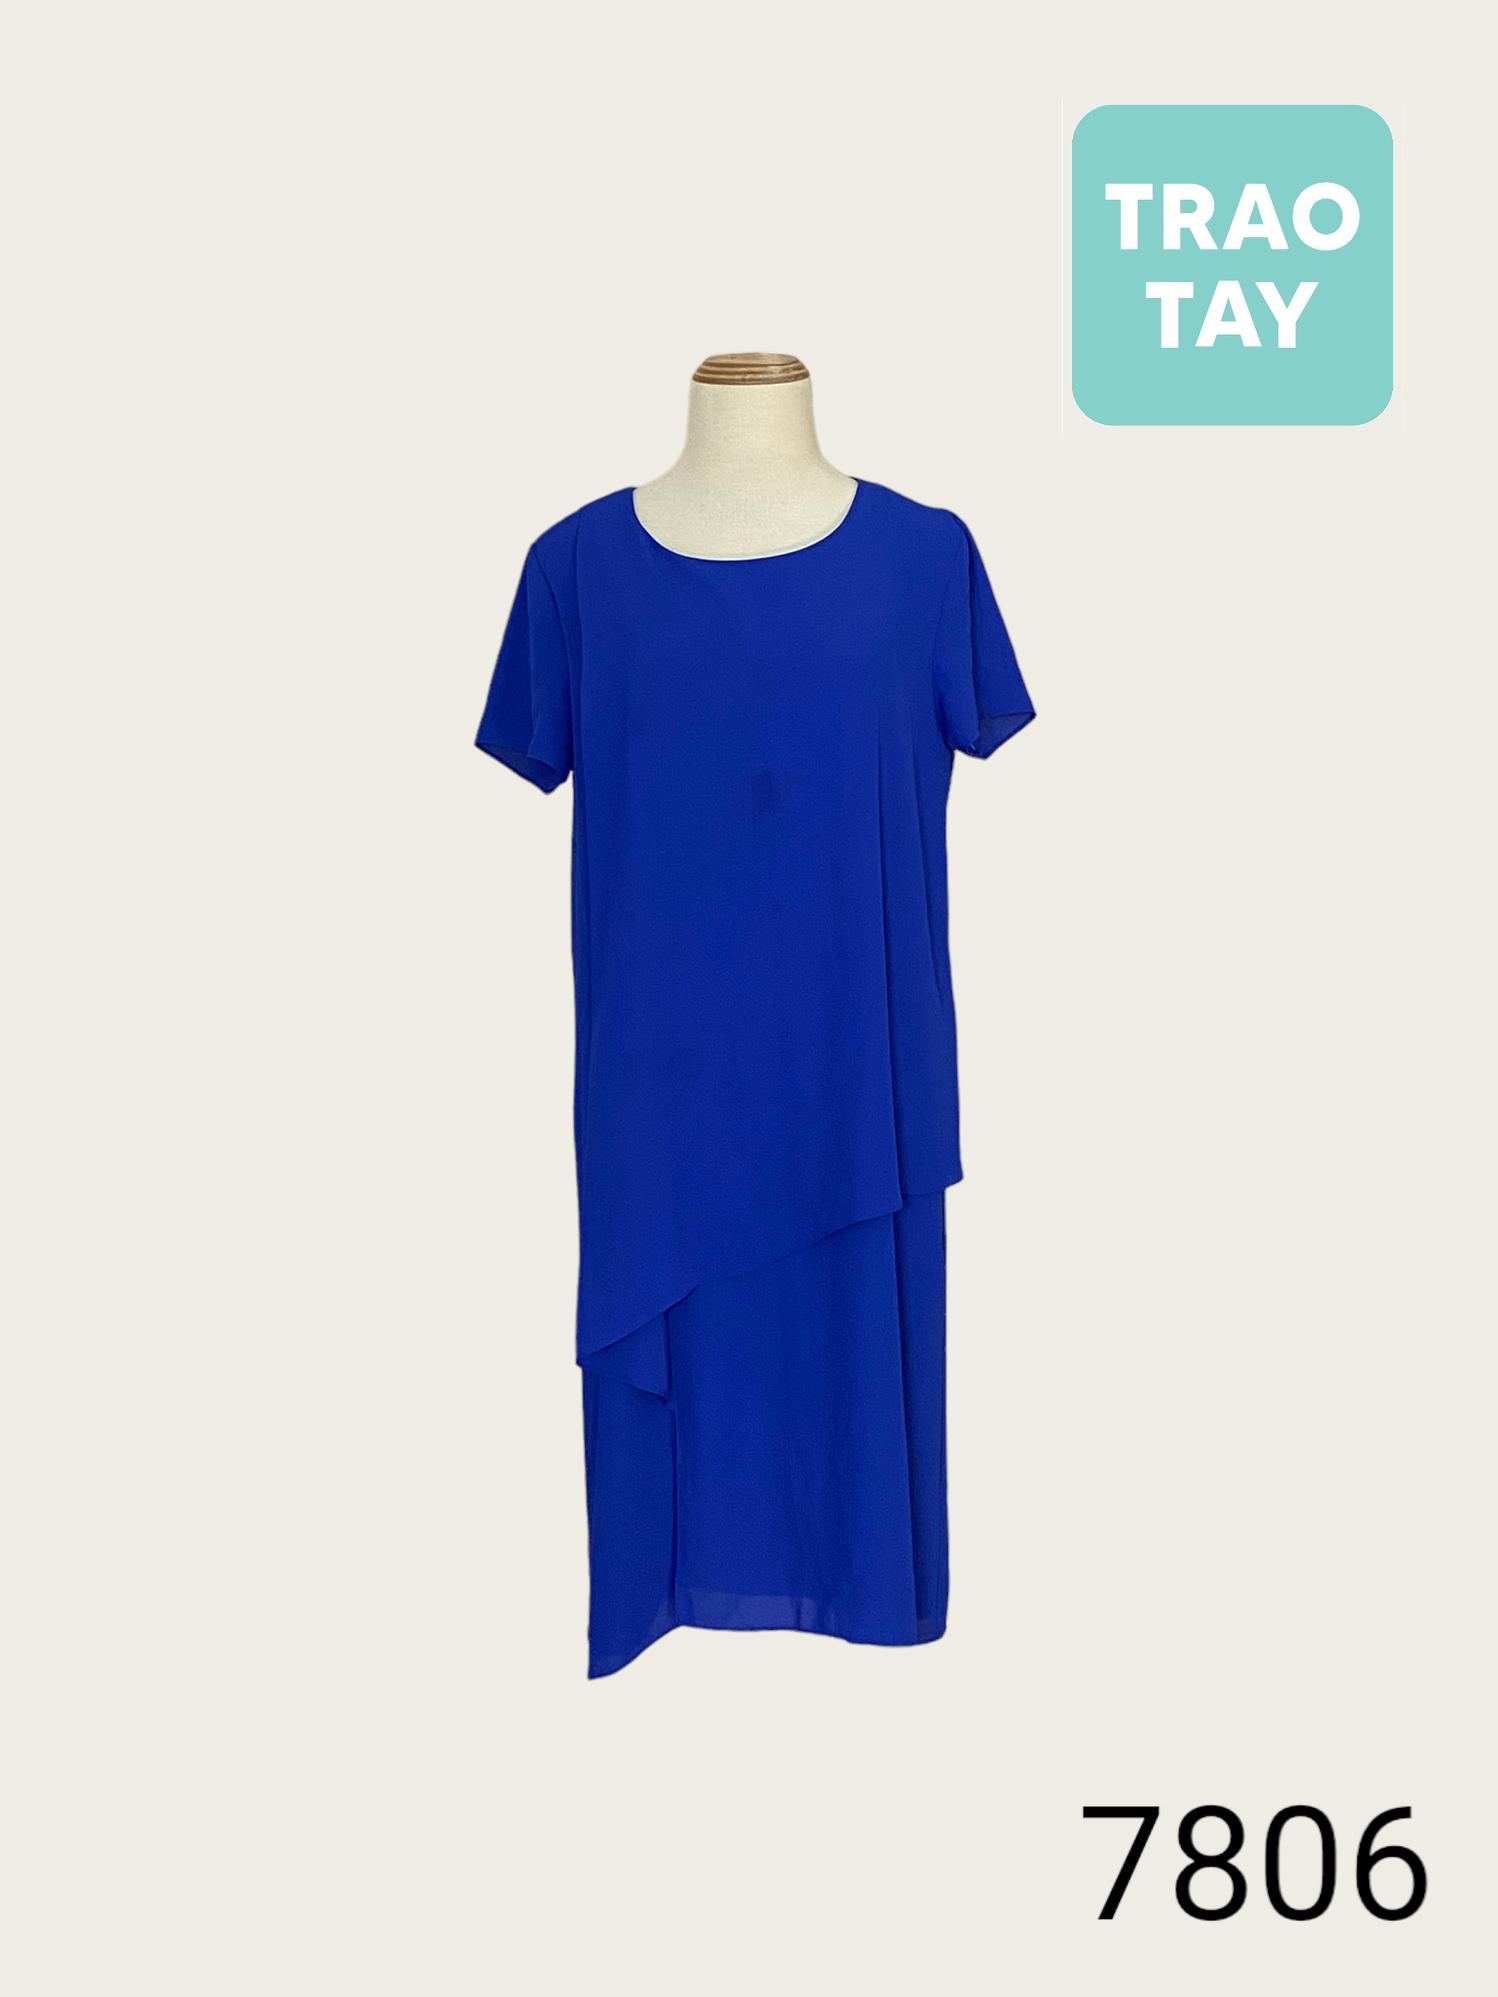 Mặc đẹp với gam màu xanh coban thời thượng hợp xu hướng 2015